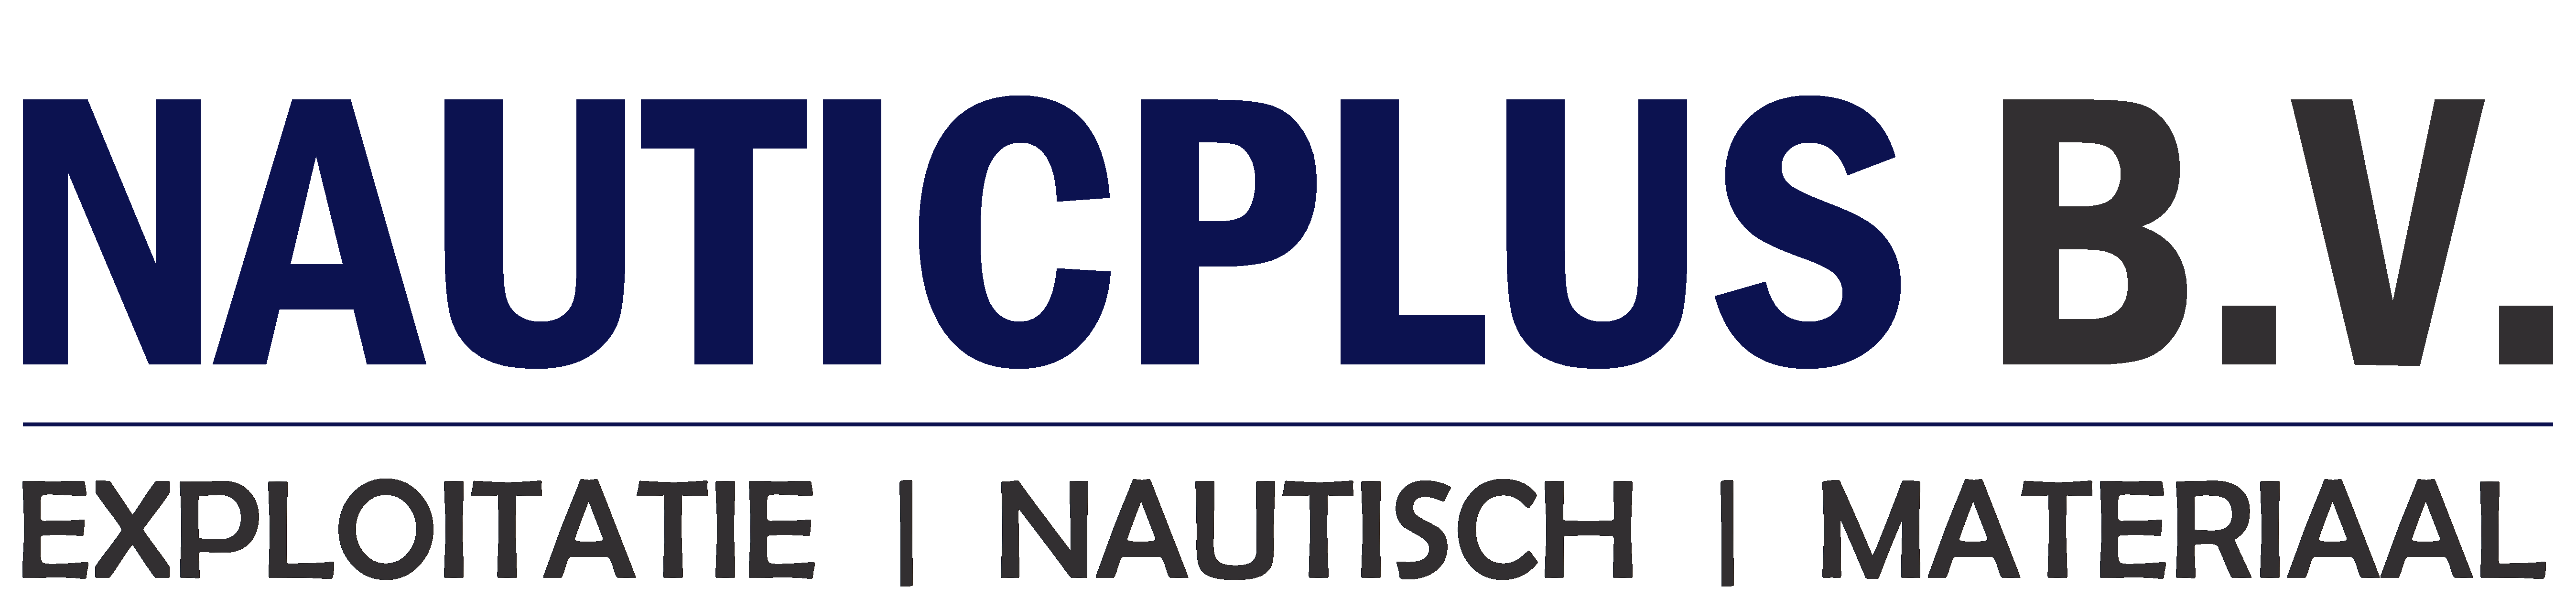 Nauticplus logo